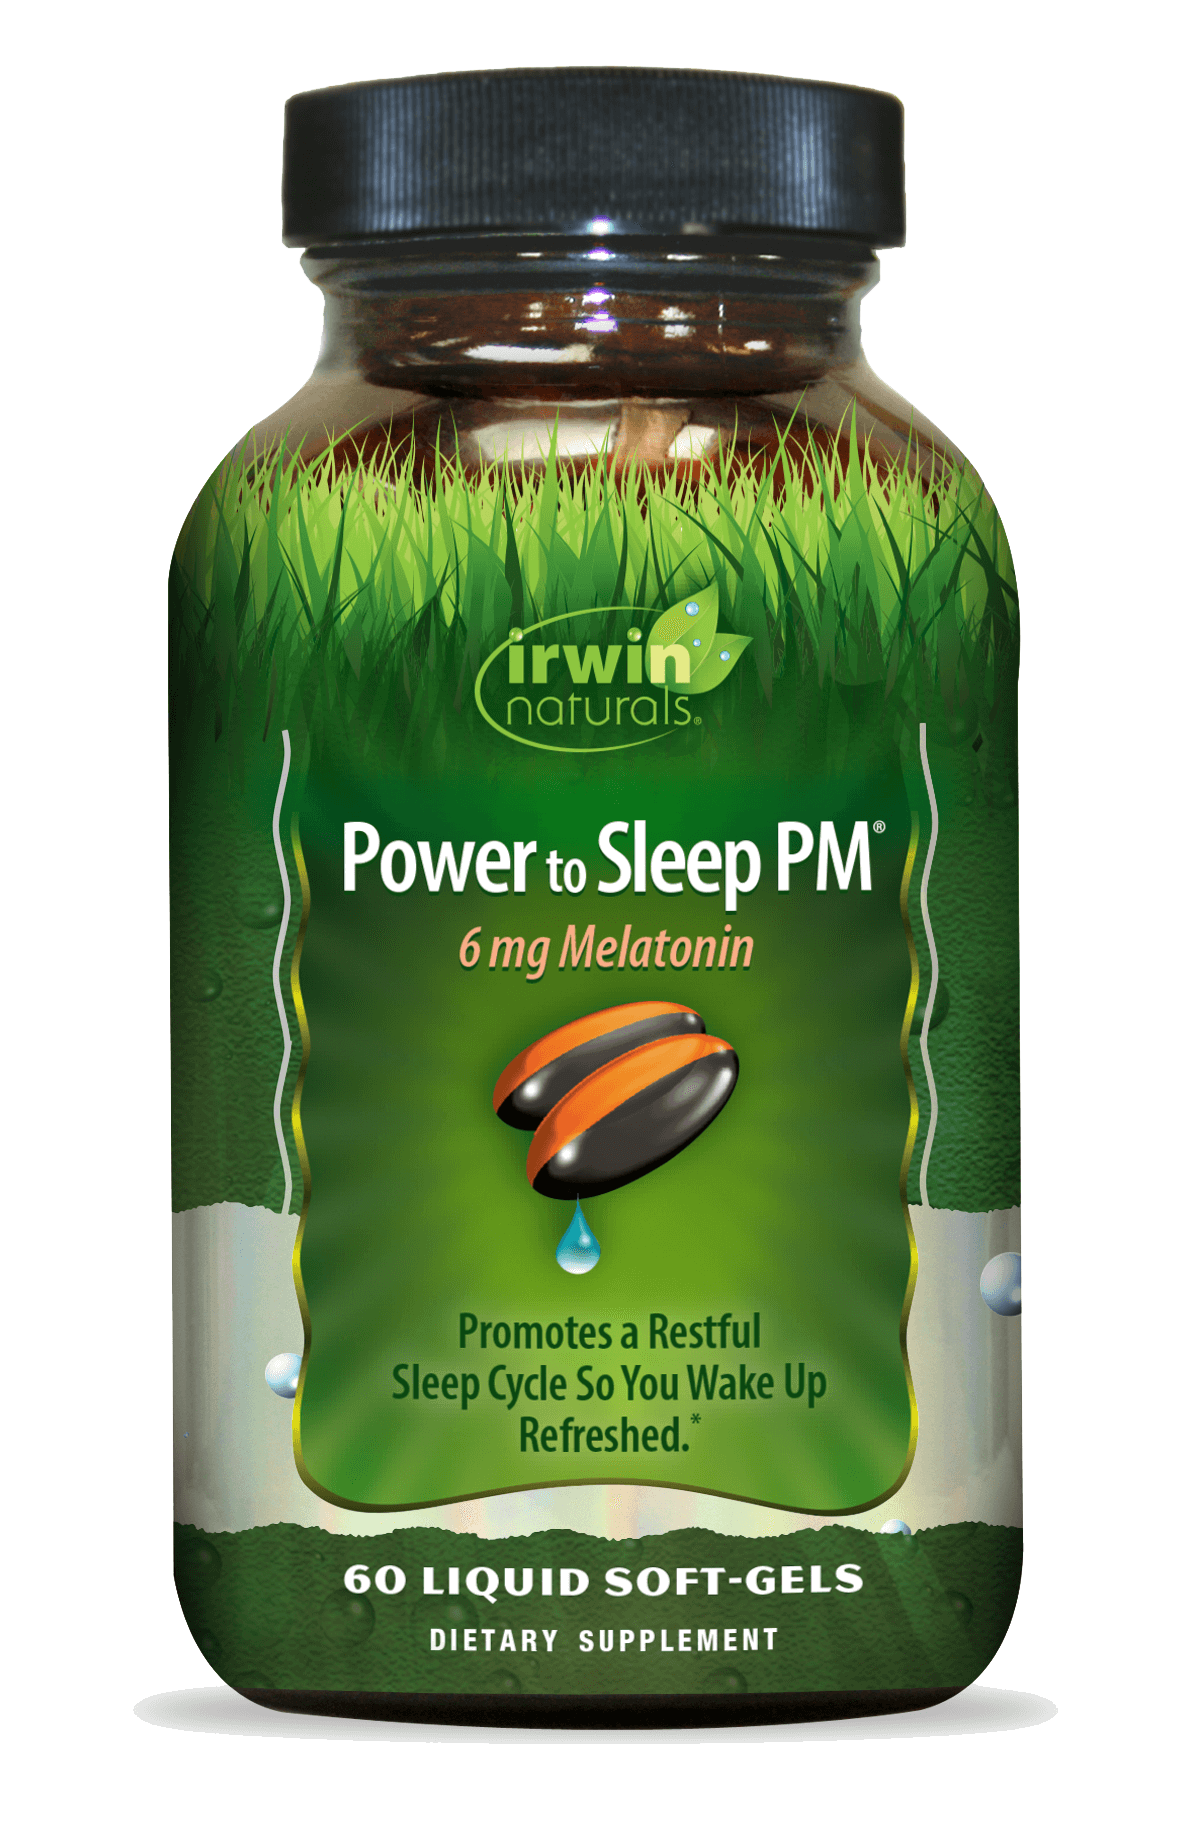 Power to Sleep PM 6 mg Melatonin by Irwin Naturals